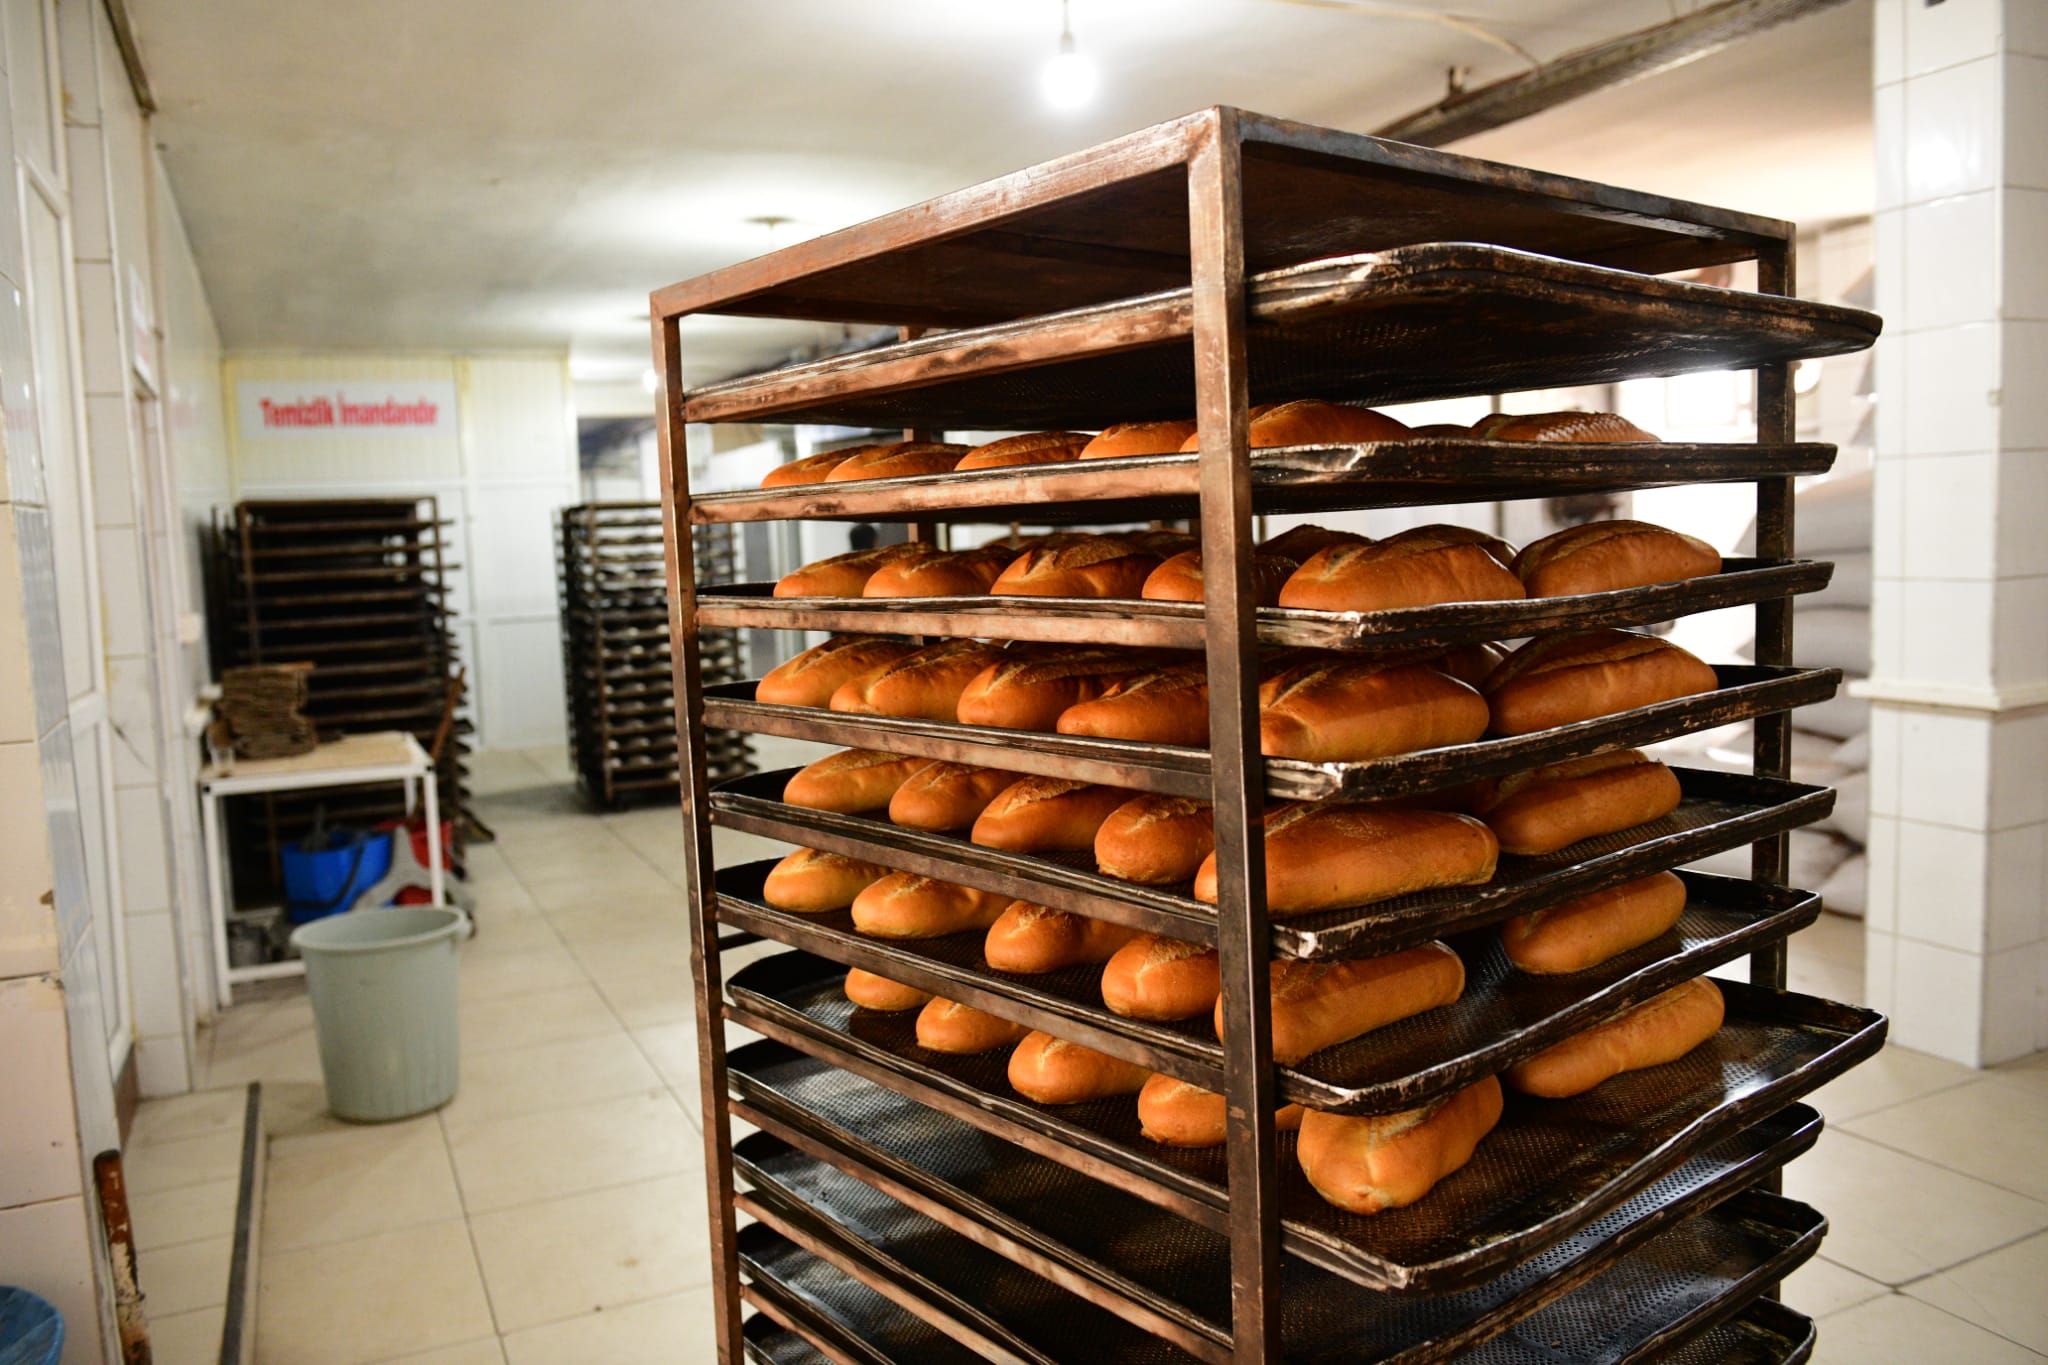 AK Partili Elbistan belediyesi Türkiye'ye örnek olacak! Halk ekmek ve pide, Ramazan ayı boyunca 1 TL'den satılacak, günlük üretilen ekmeğin yarısı bedava dağıtılacak 